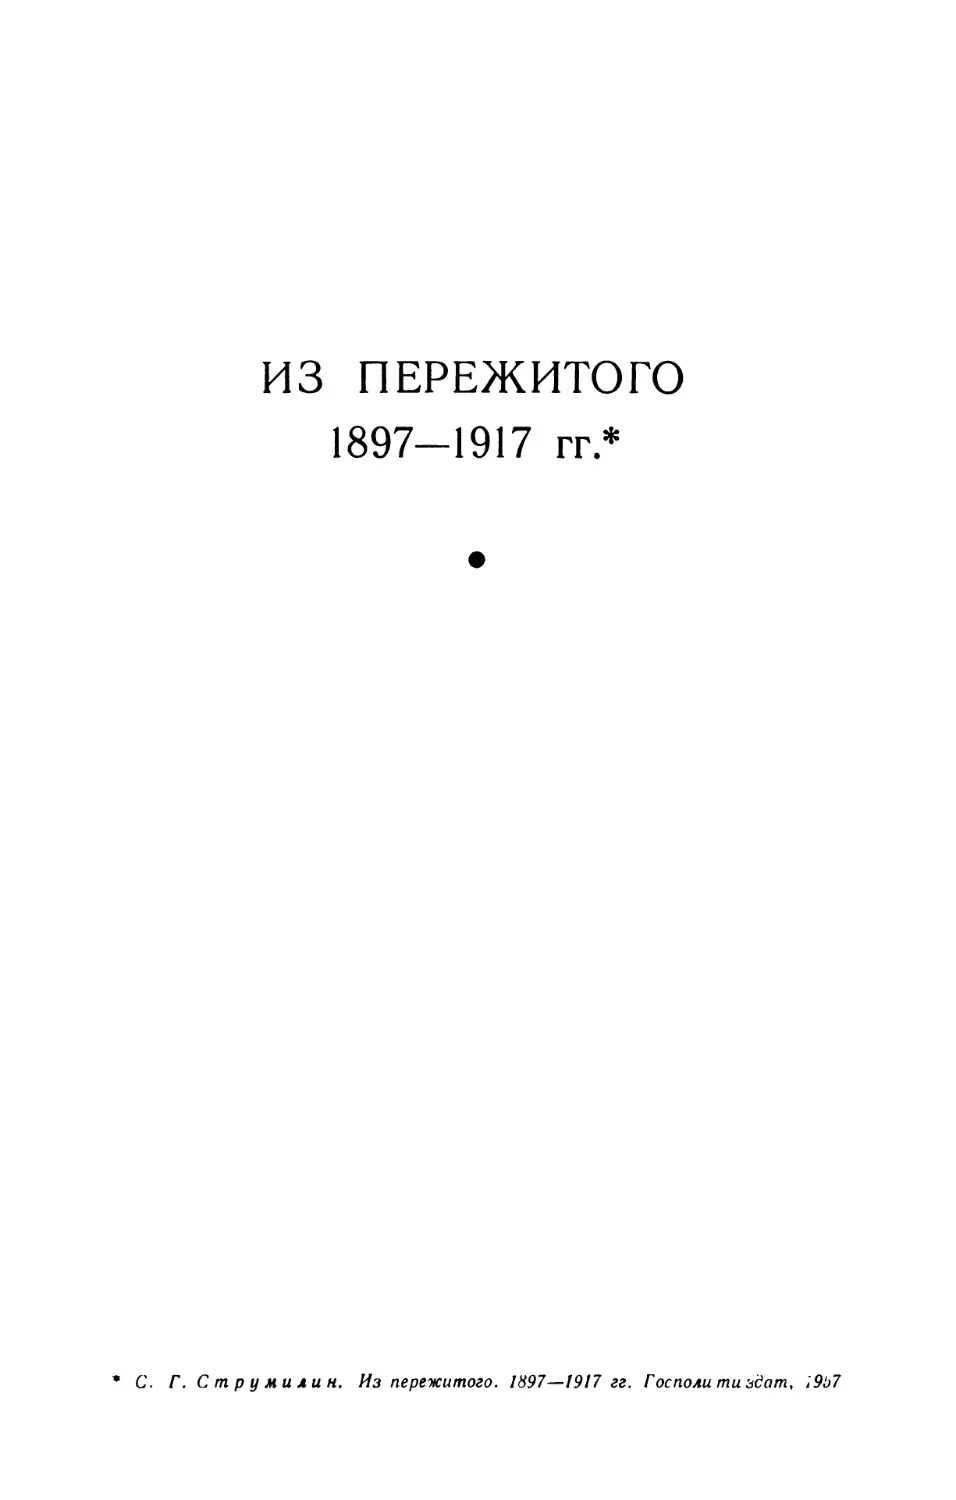 ИЗ ПЕРЕЖИТОГО 1897-1917 гг.